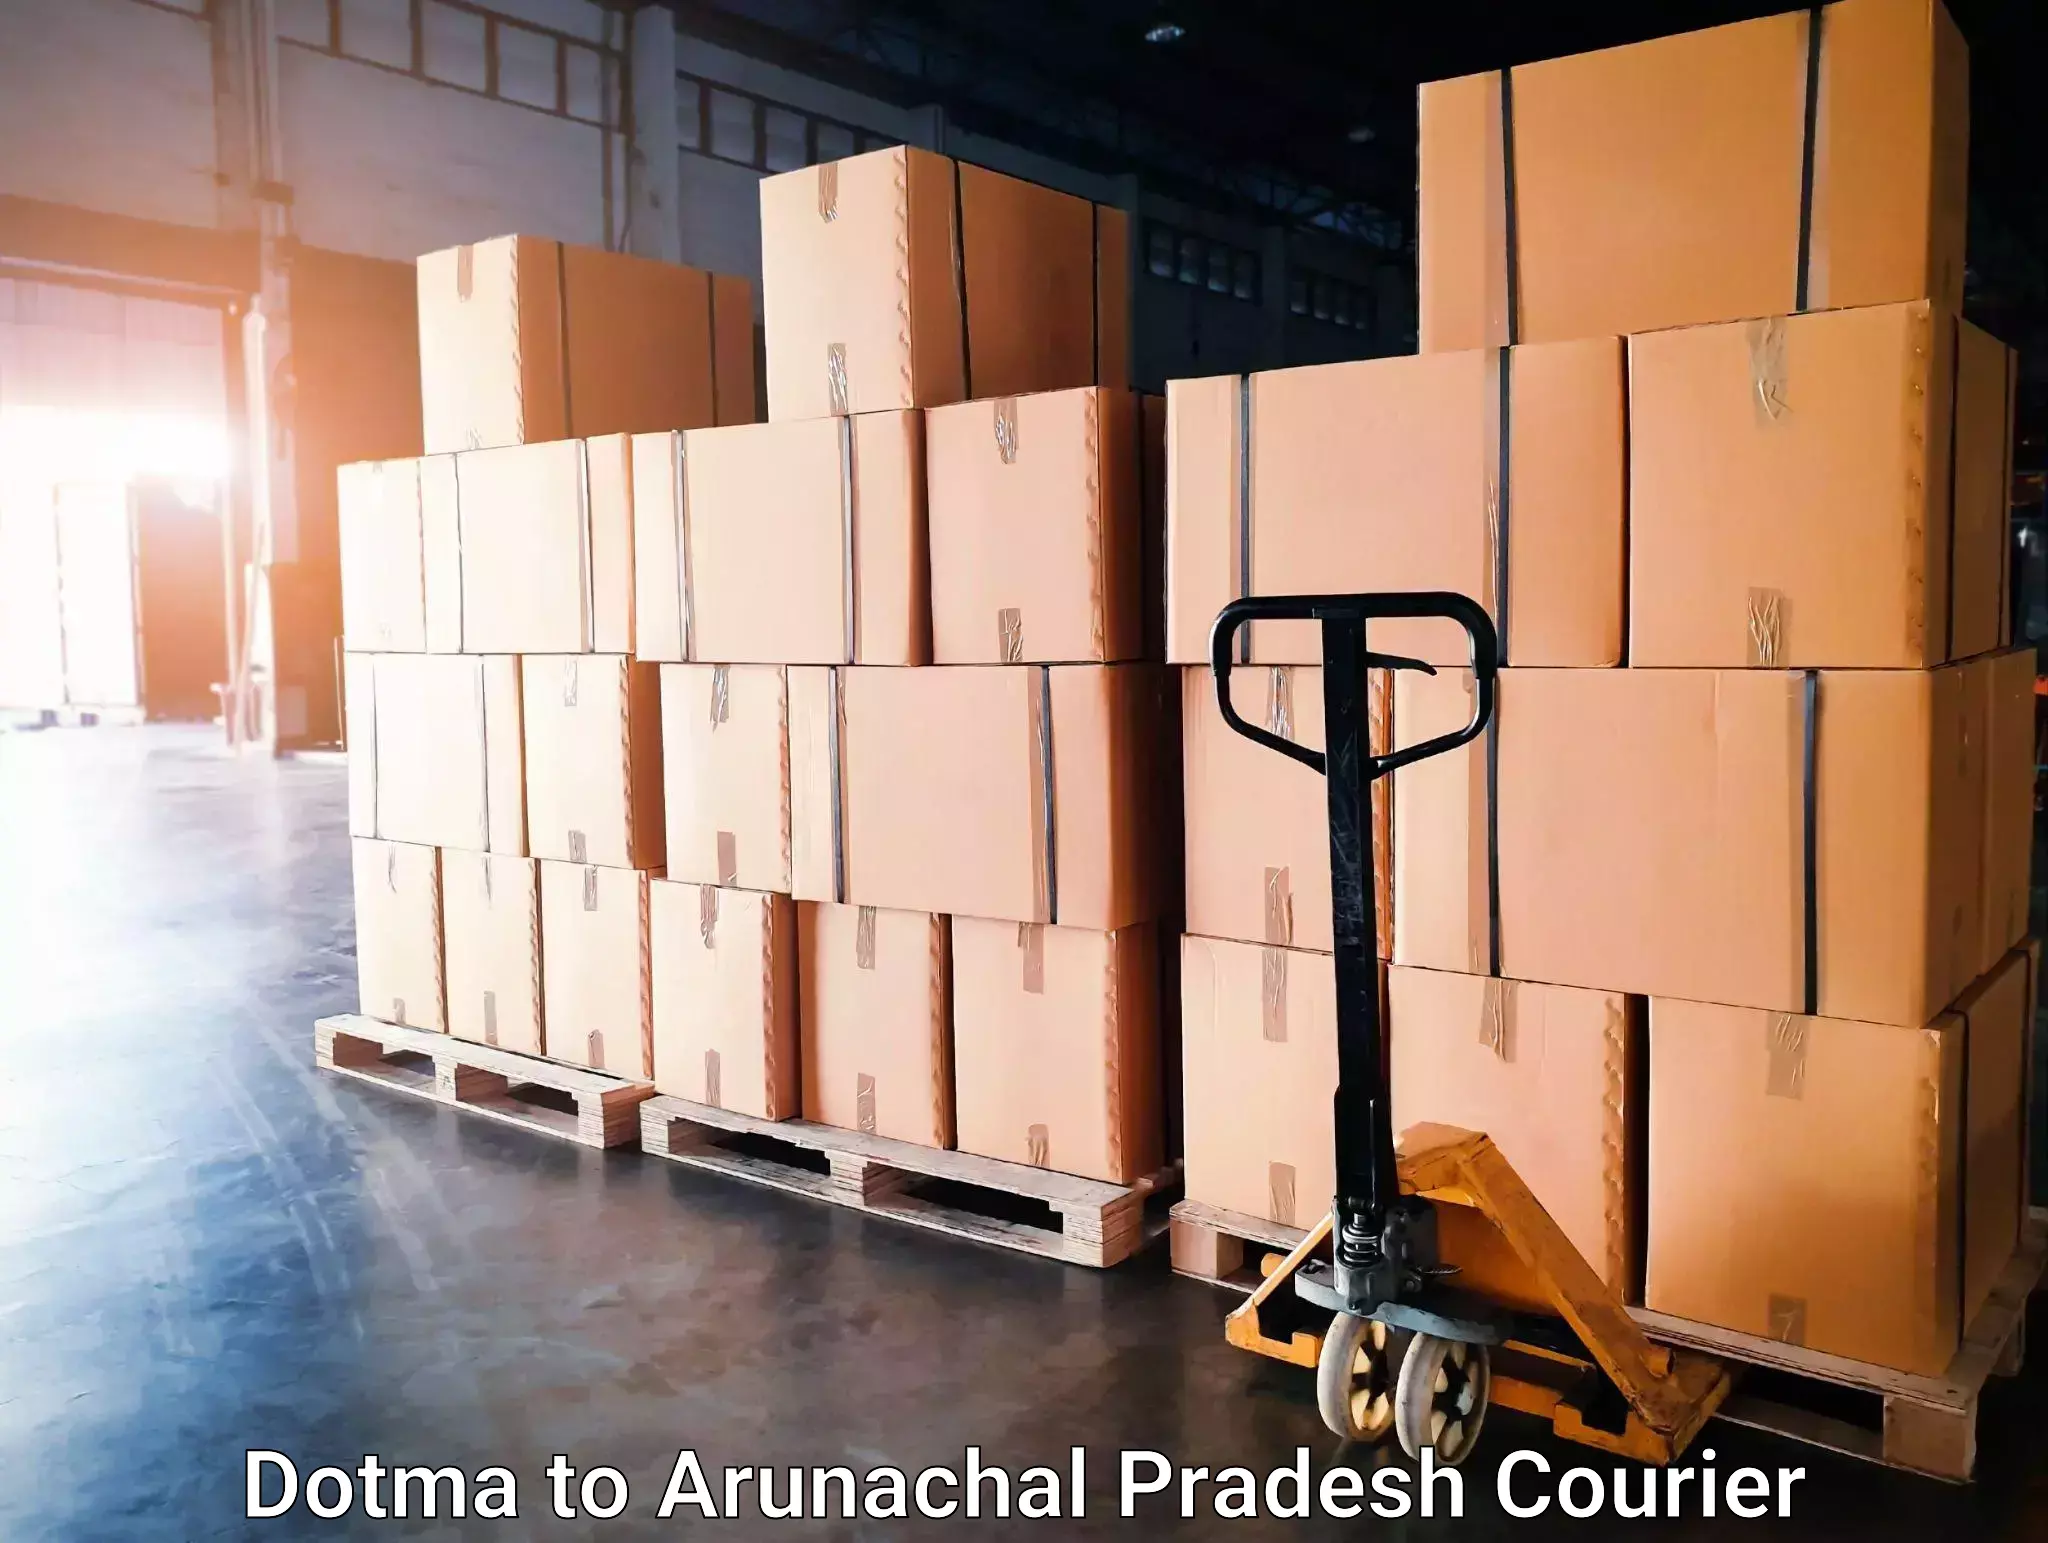 Express package services Dotma to Arunachal Pradesh